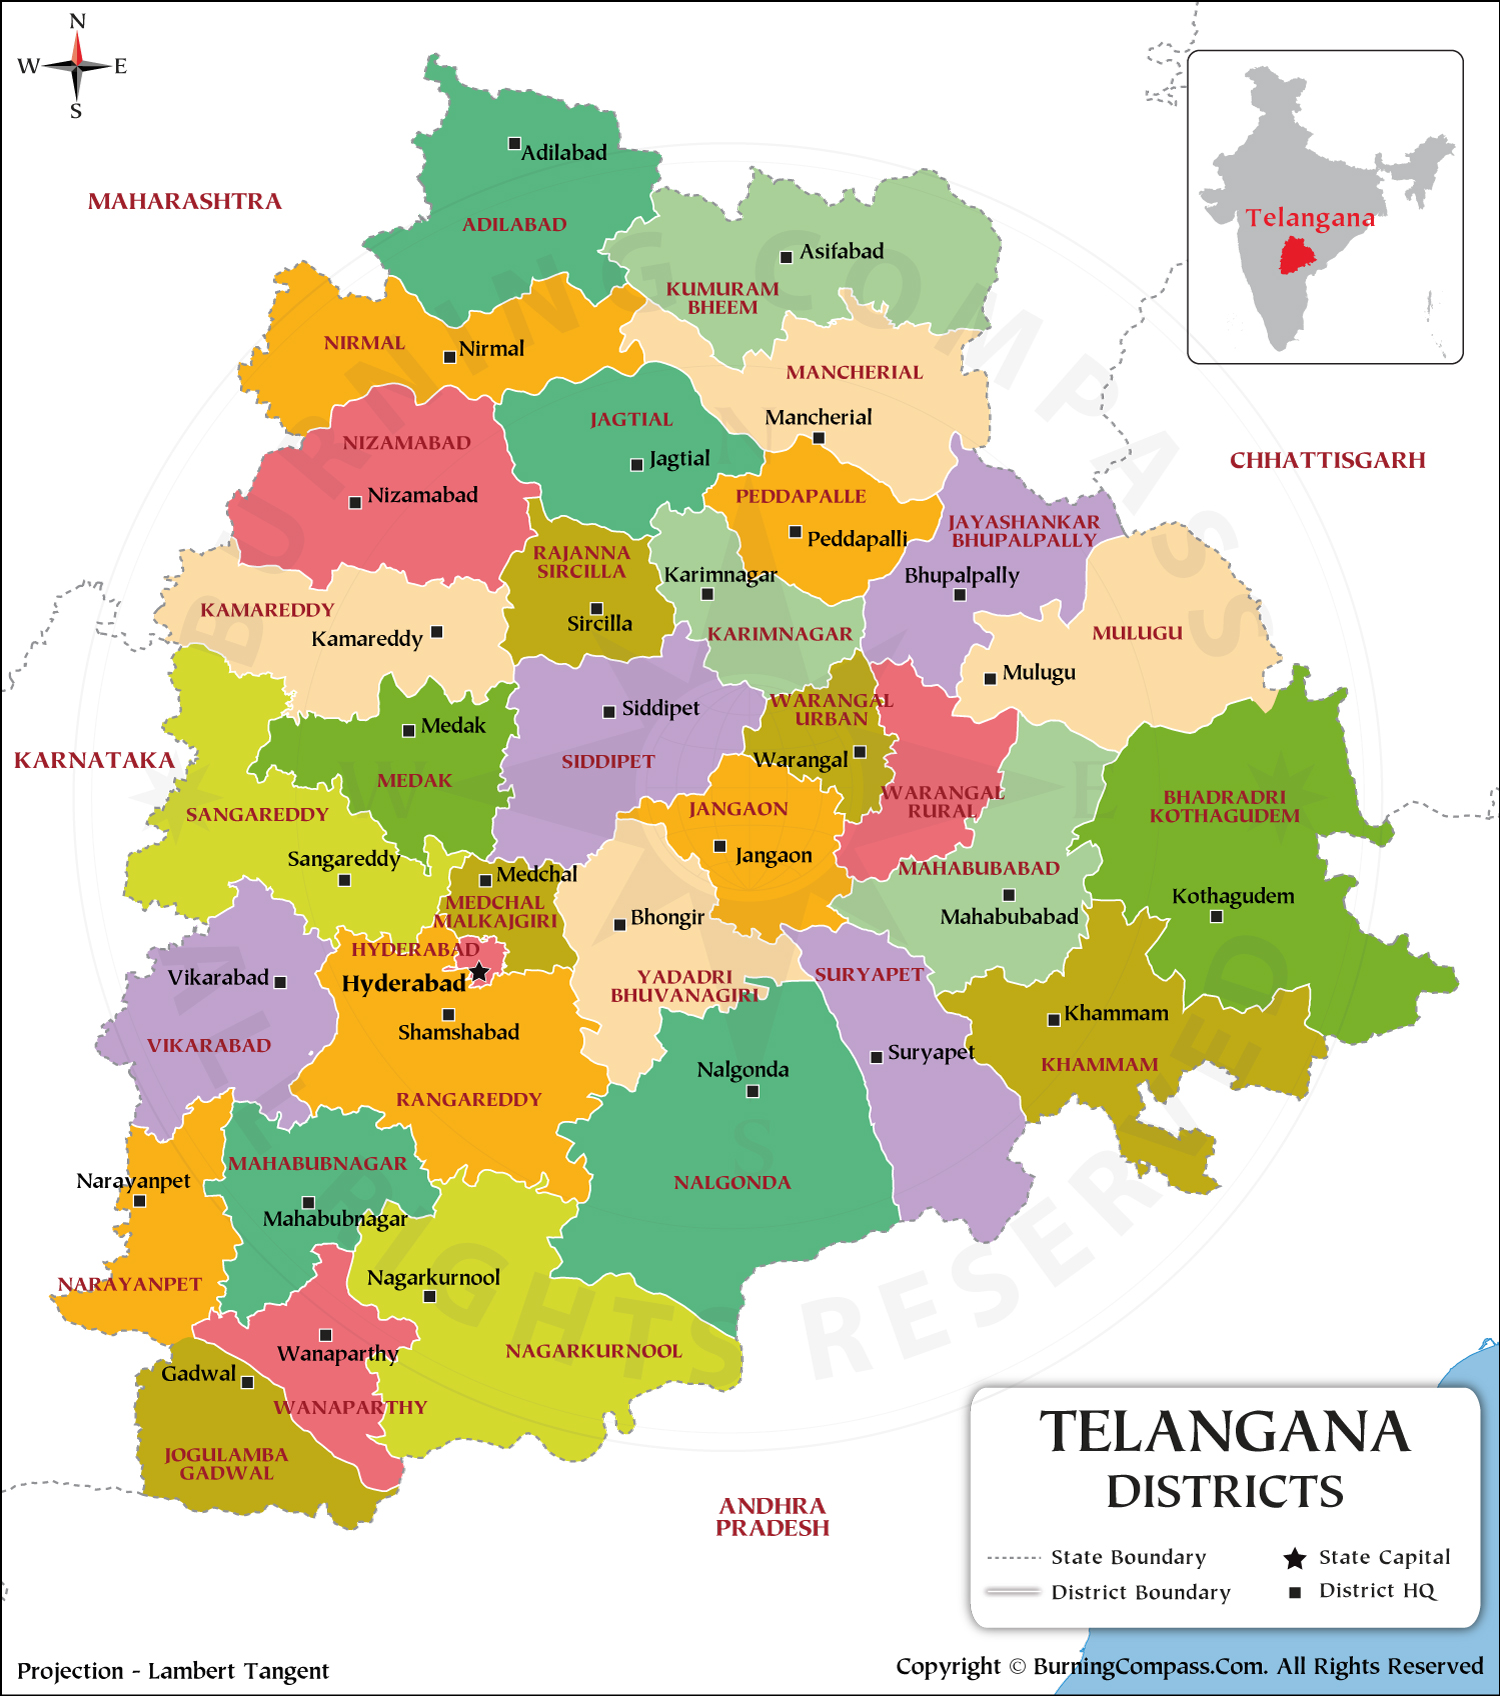 telangana-map-2018-printable-calendars-posters-images-wallpapers-free